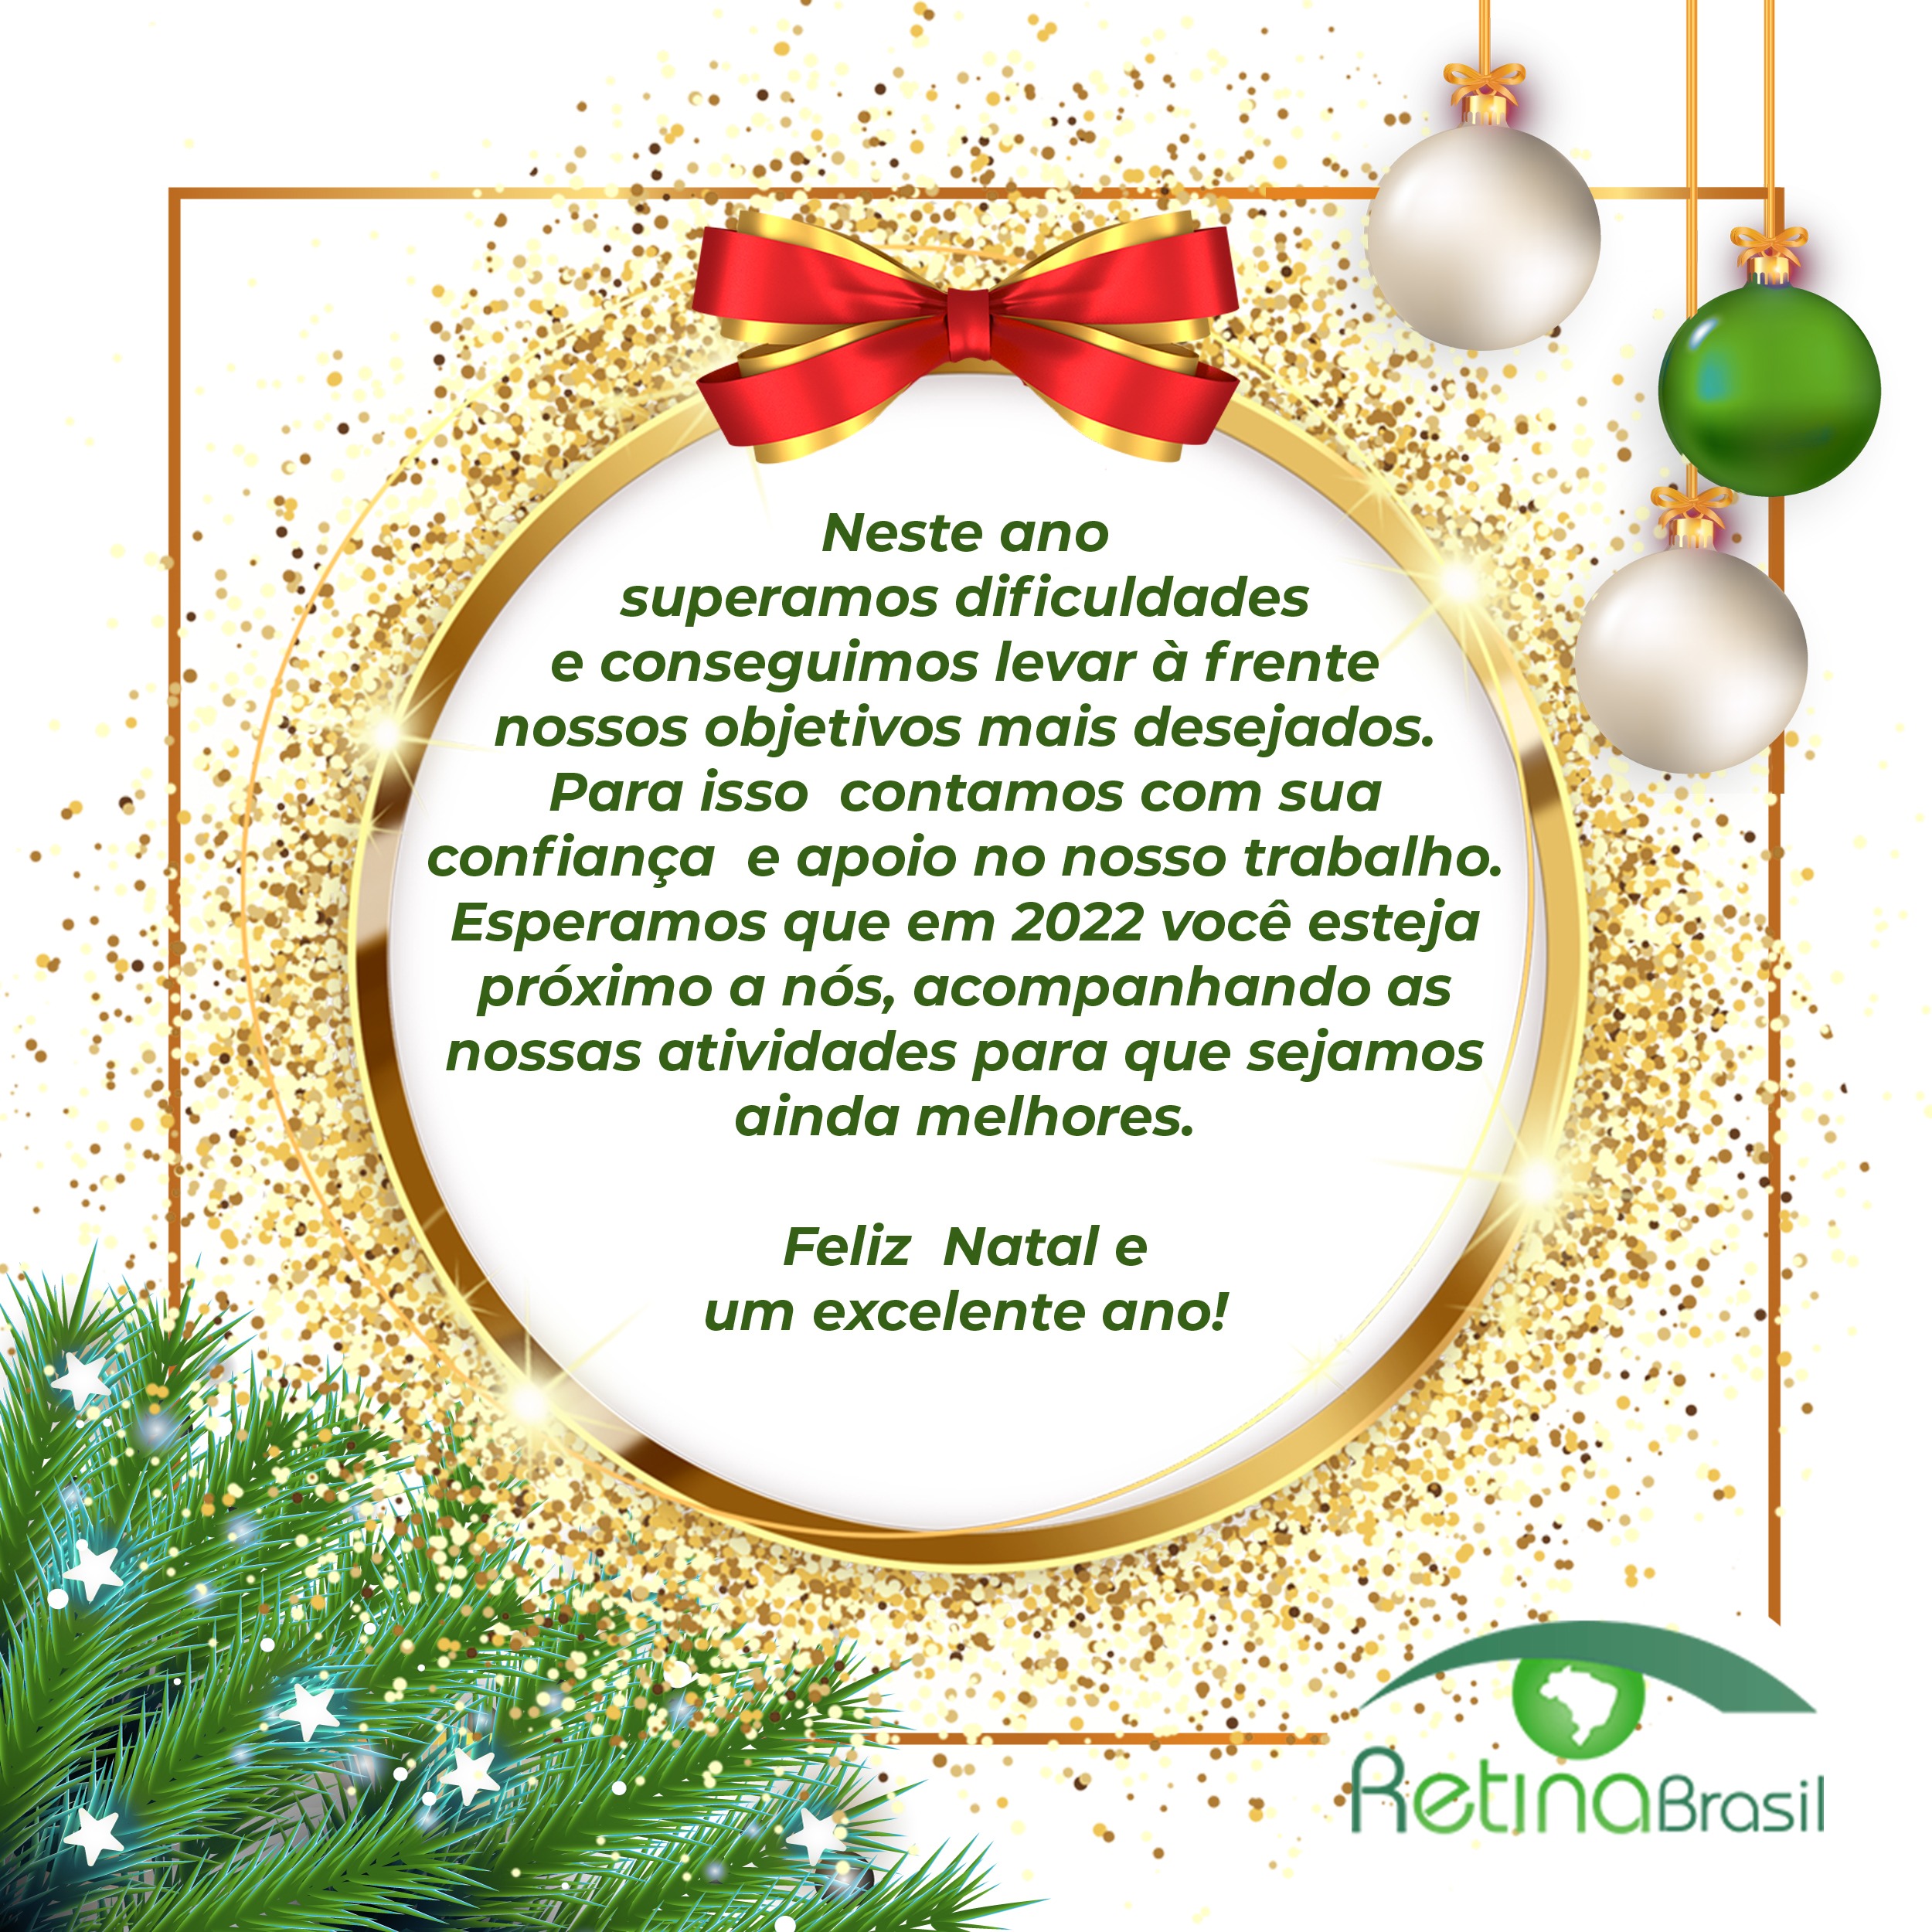 Feliz Natal da Retina Brasil — Retina Brasil